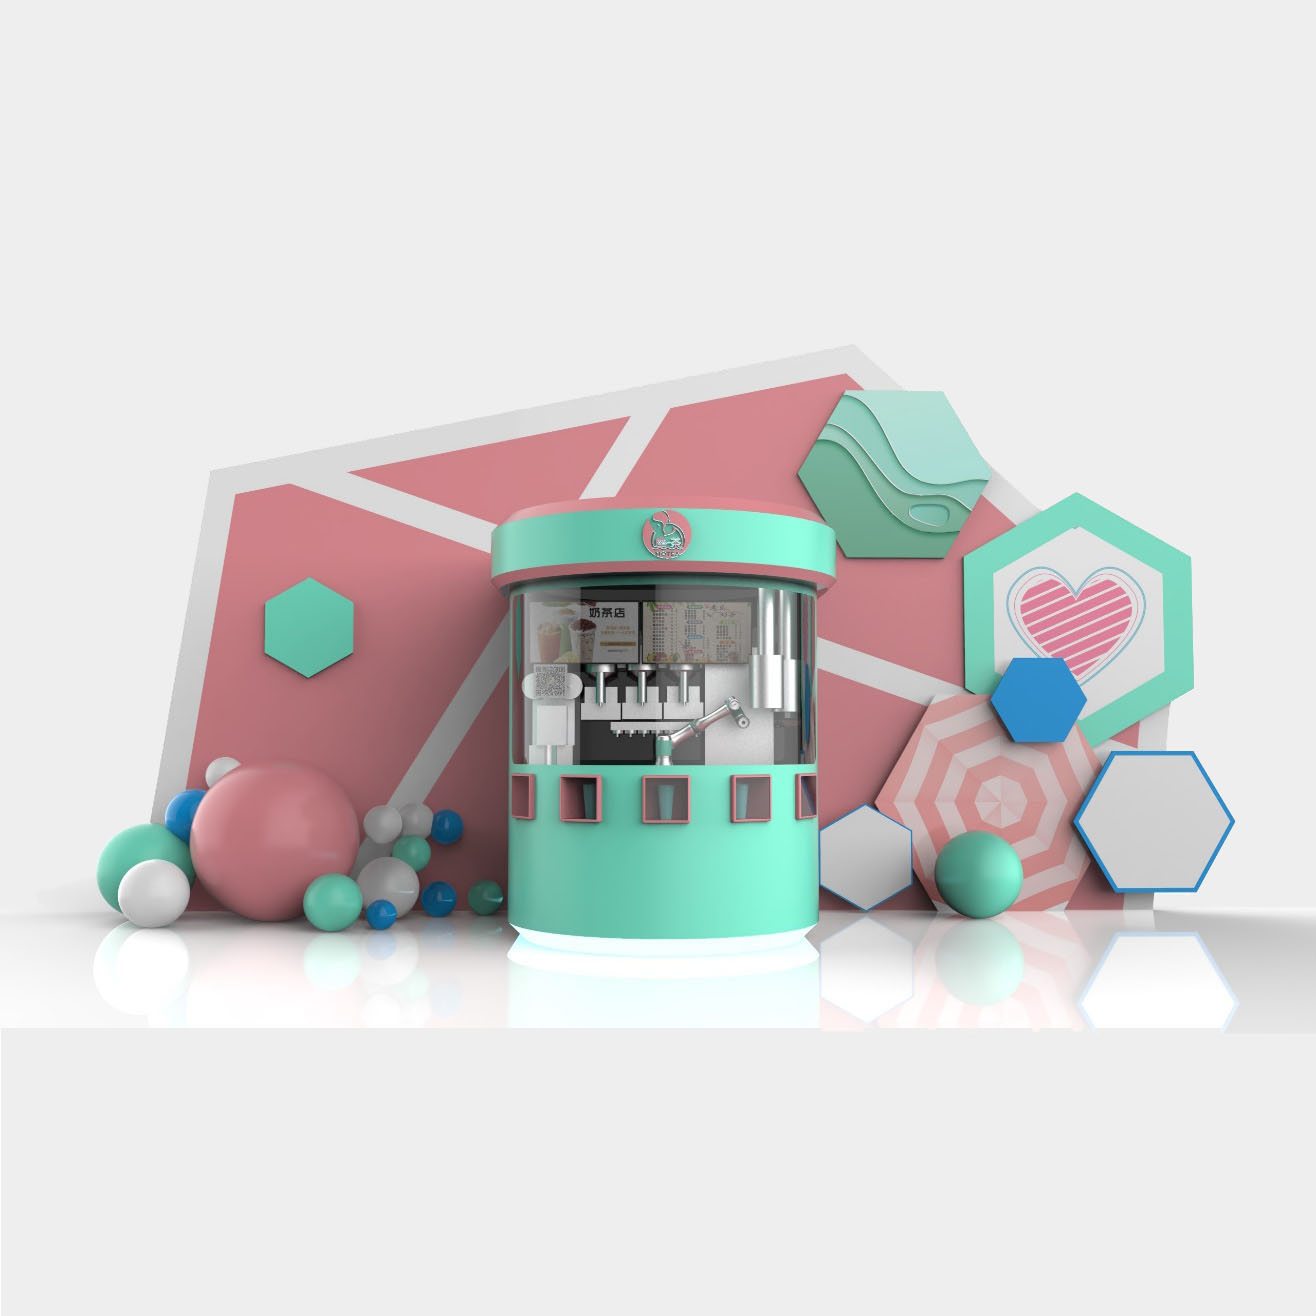 Novo robô de moda Quiosque de chá com leite para cenários de aplicação interna Imagem em destaque